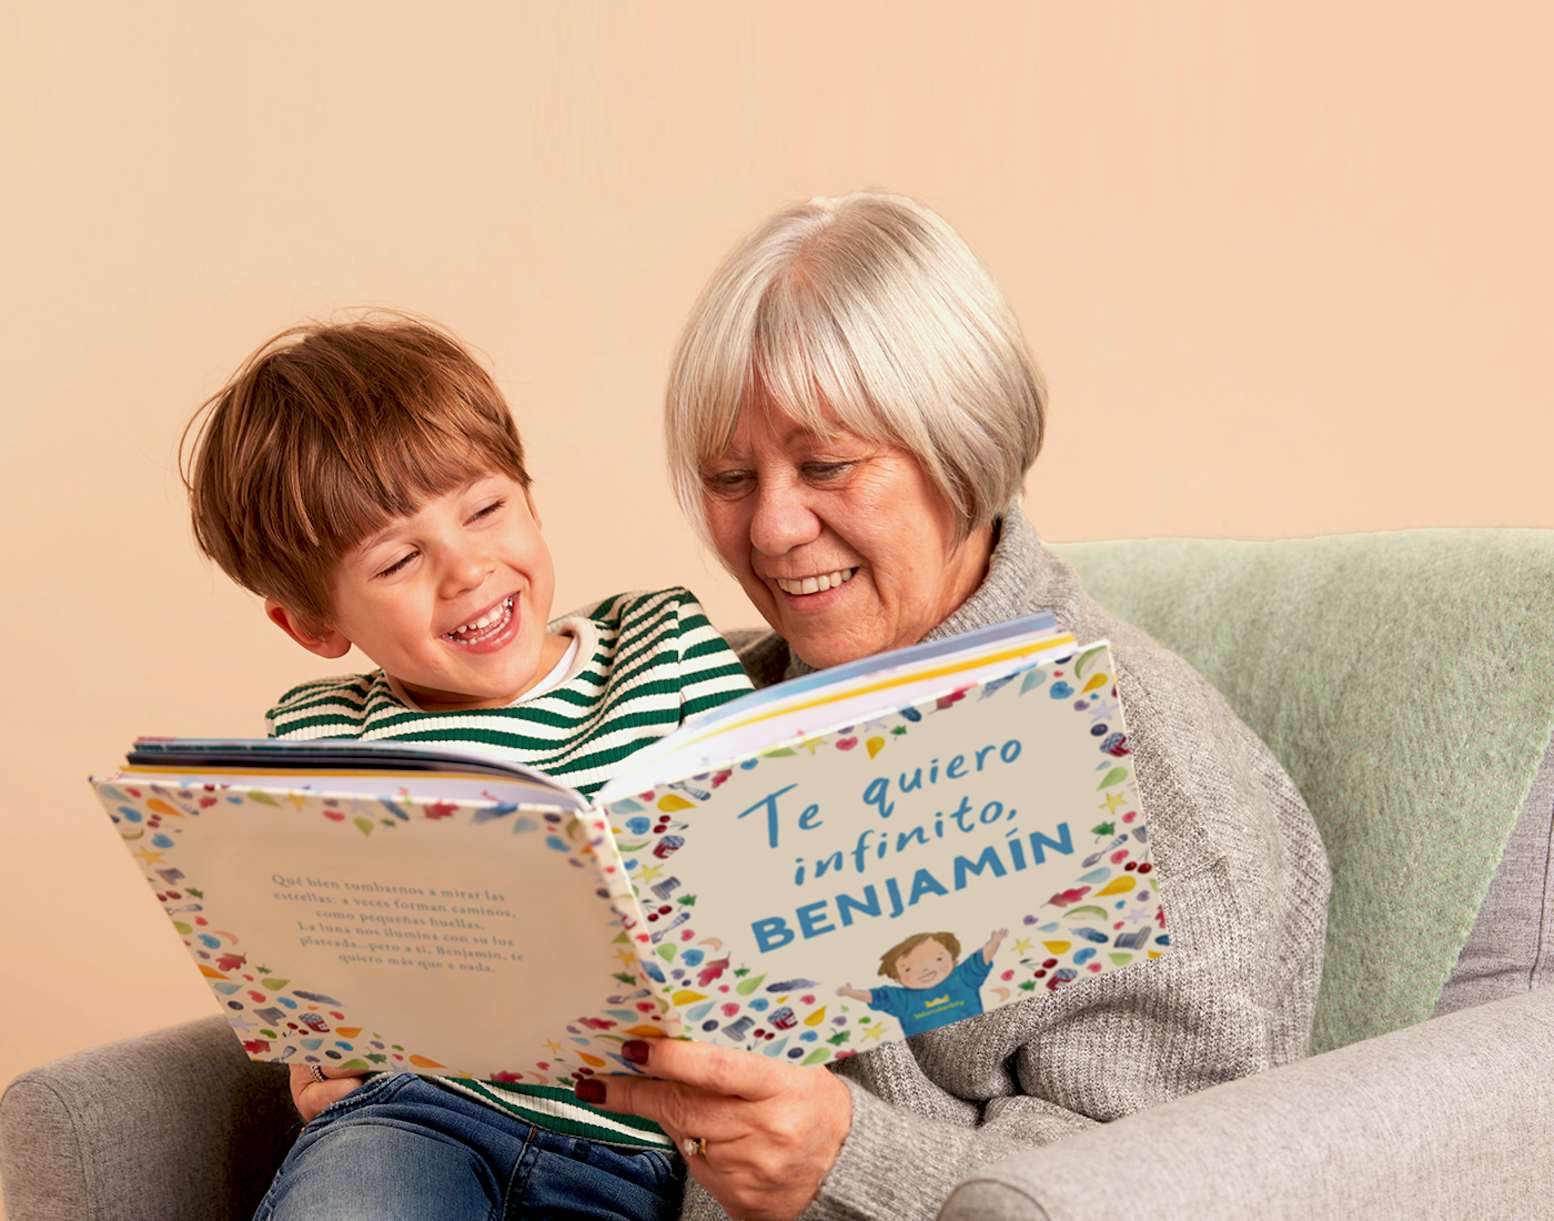 Abuela y nieto leyendo “Te quiero infinito”